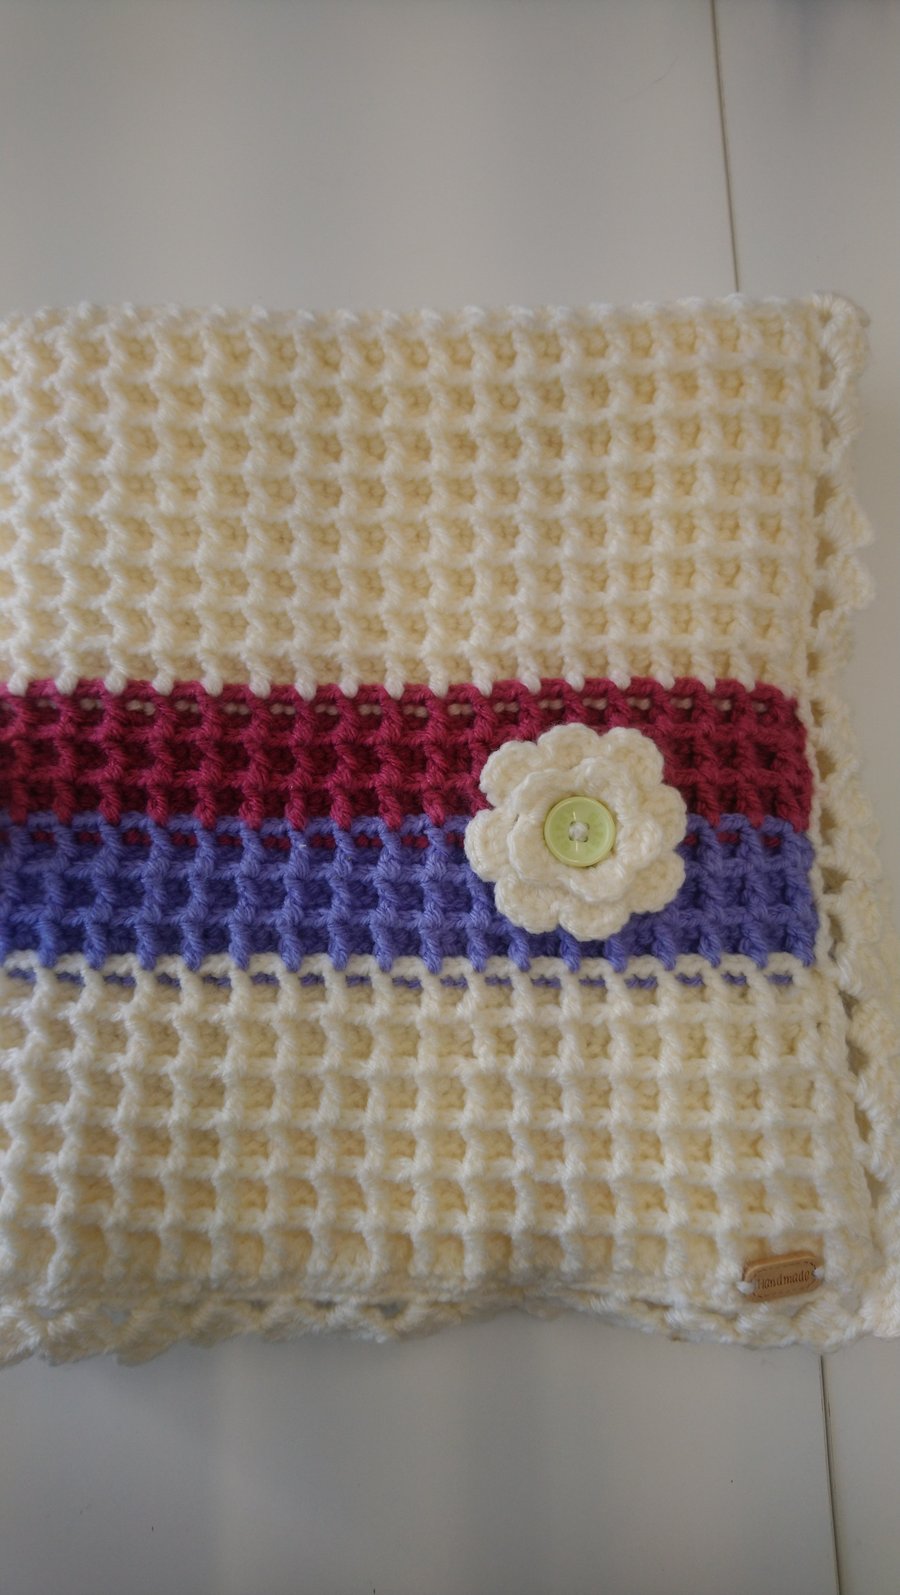 Crochet lap blanket